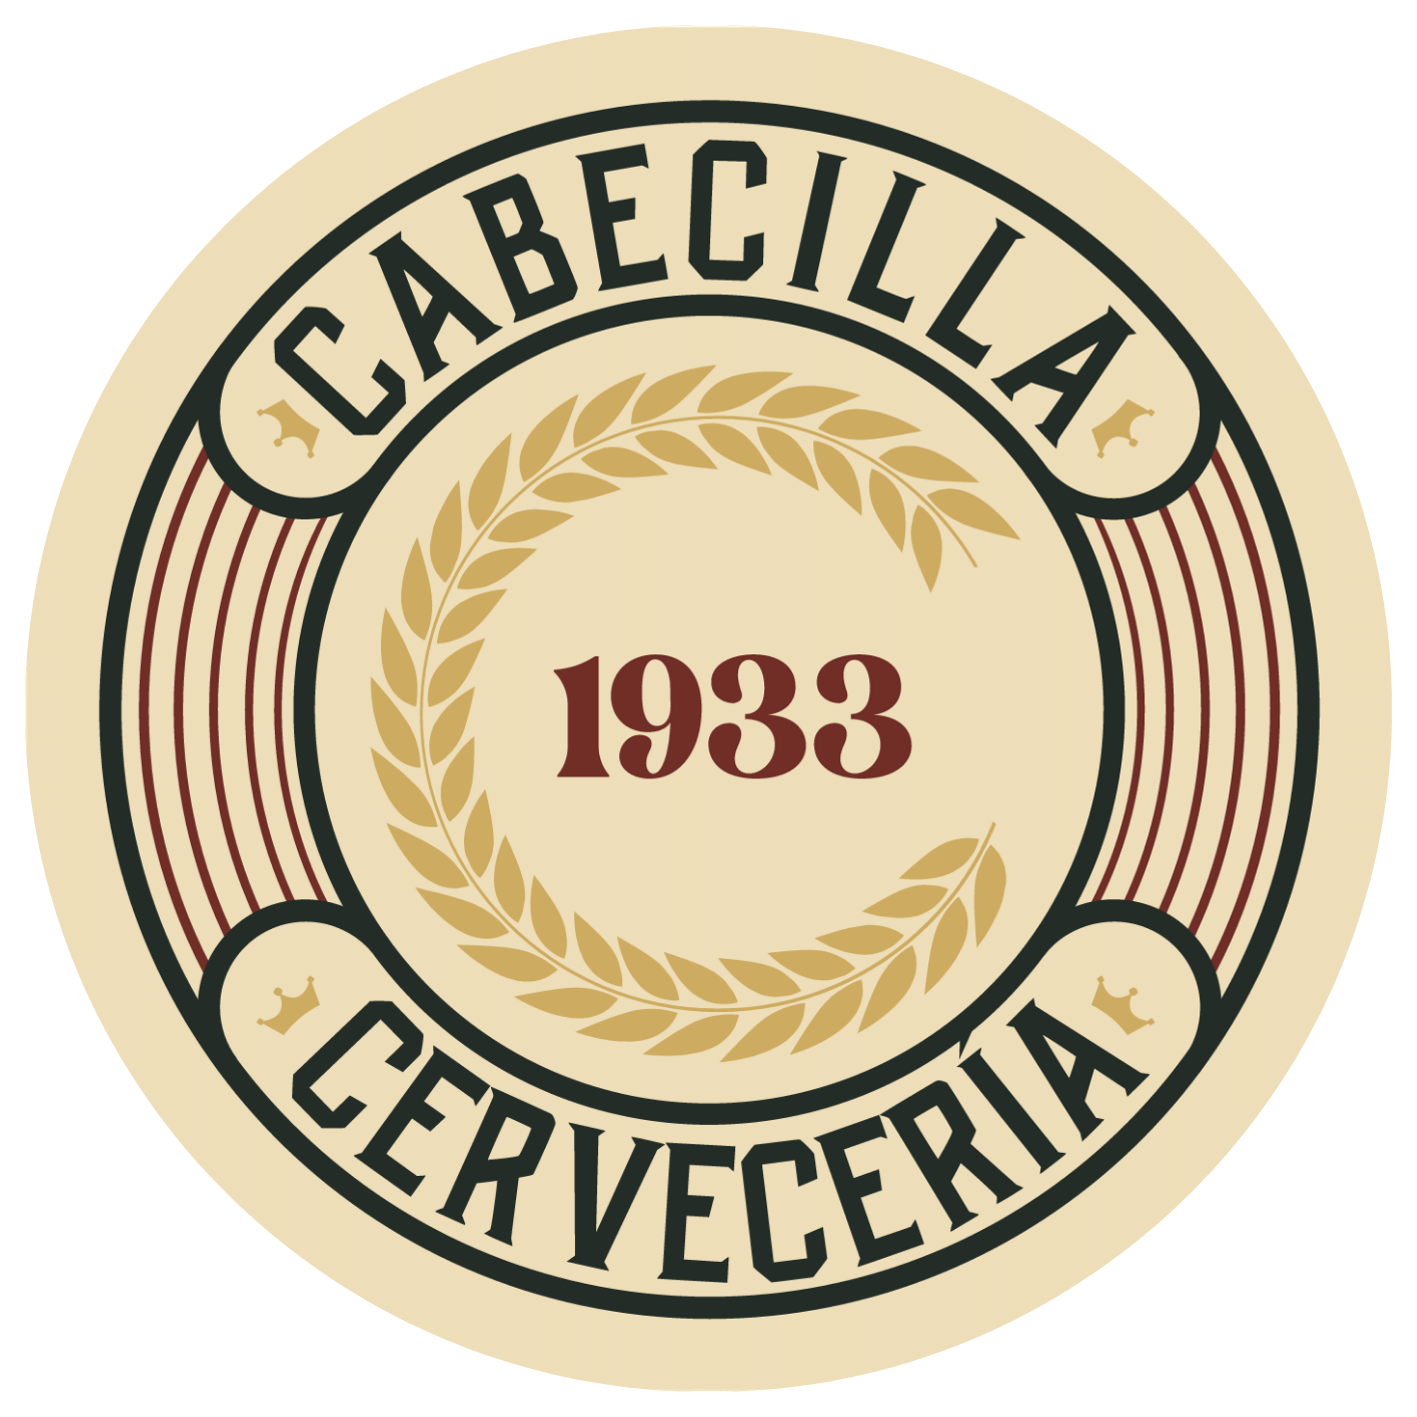 Cabecilla 1933